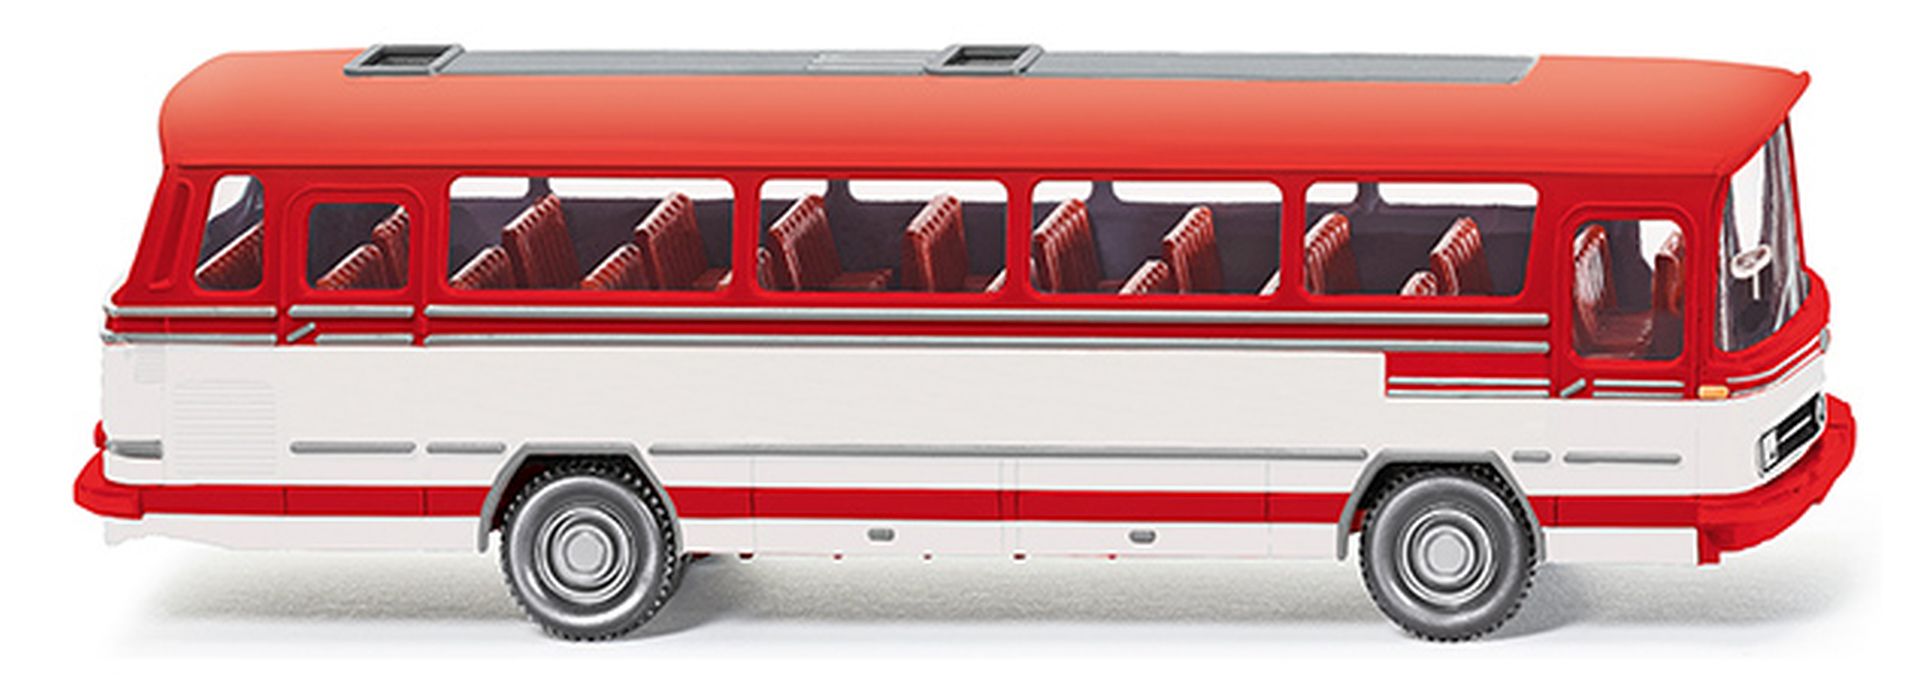 Wiking 070902 - Reisebus (MB O 302) verkehrsrot